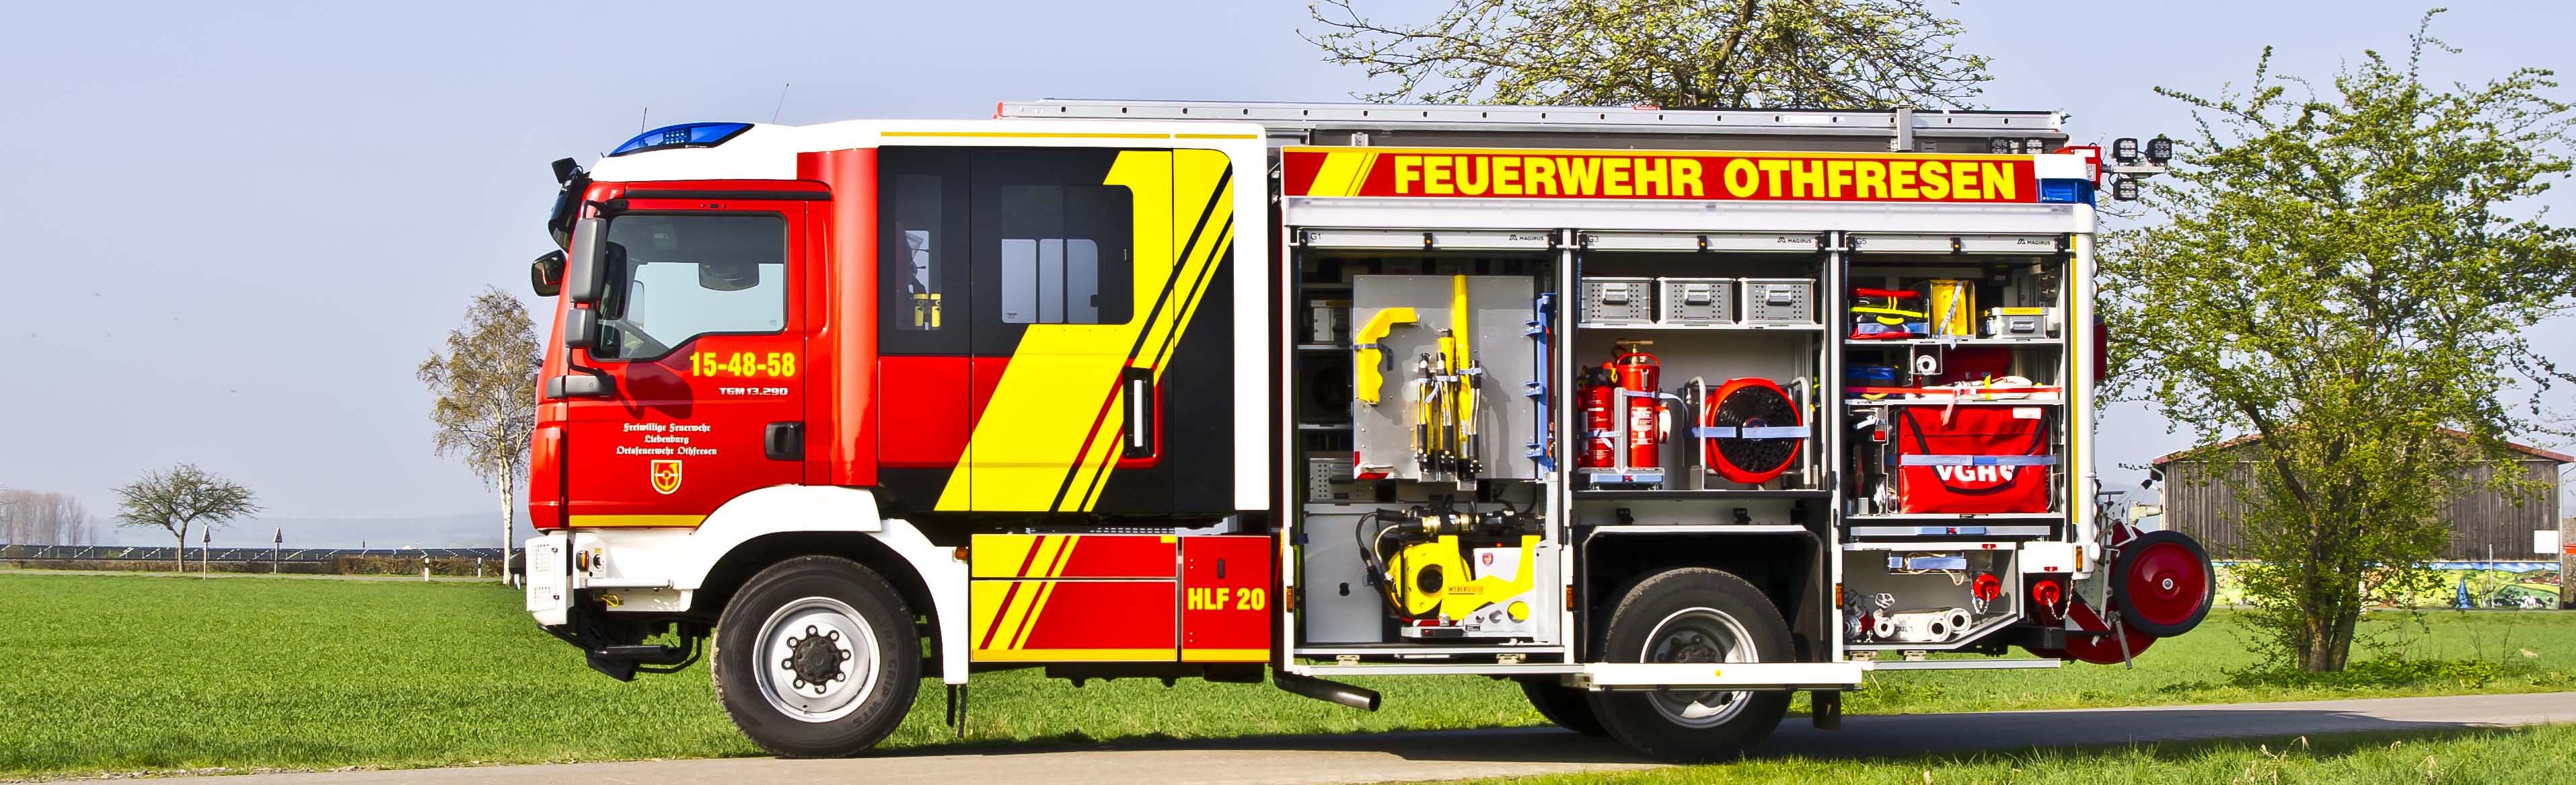 Presslufthorn] HLF 20 Freiwillige Feuerwehr Hohegeiß auf